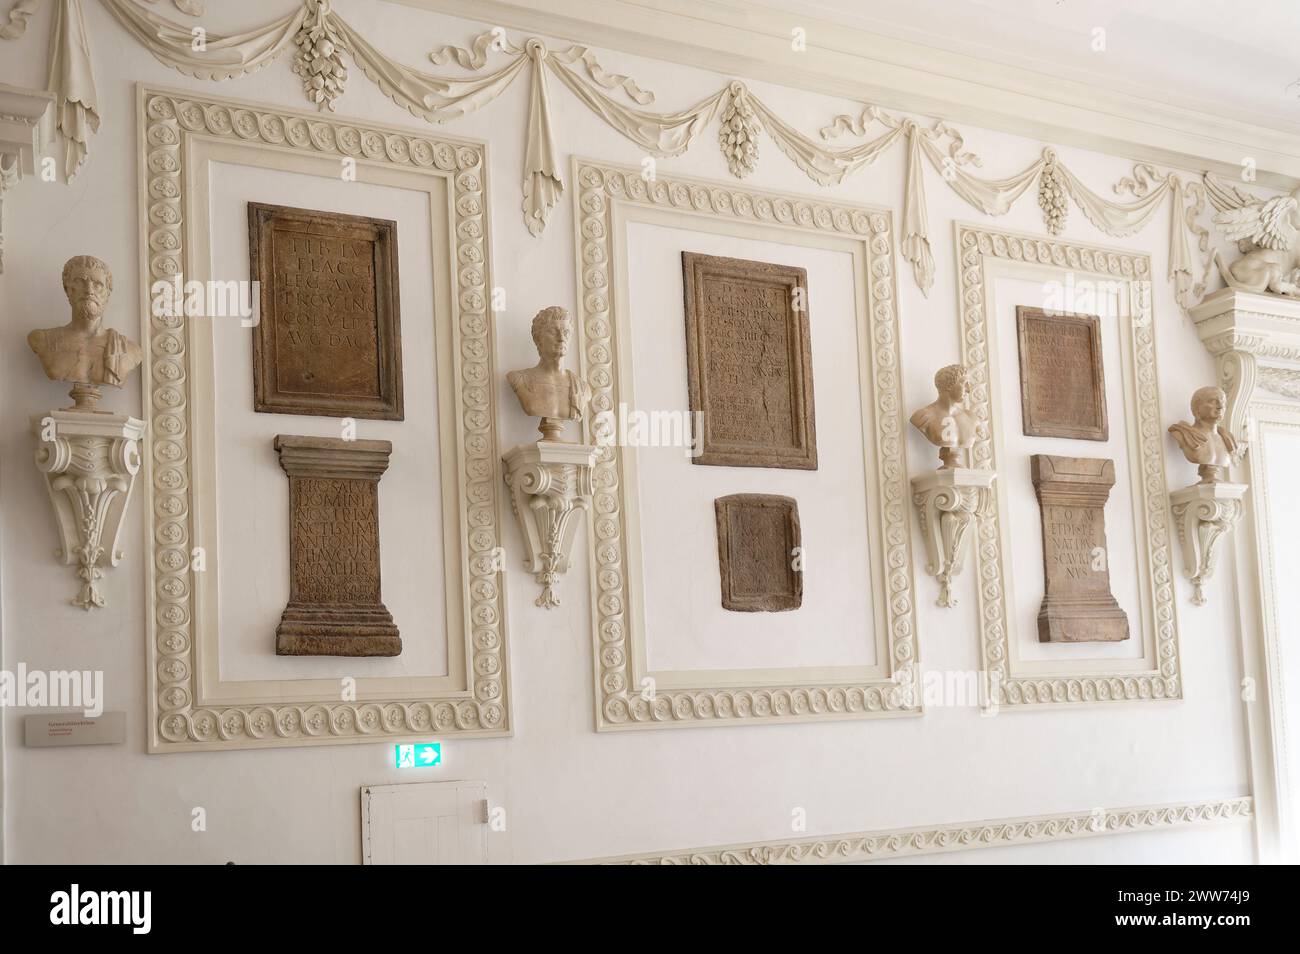 Vienna, Austria. La sala di stato barocca della Biblioteca Nazionale austriaca nella Hofburg di Vienna ospitava la biblioteca di corte. Pietre con iscrizioni dell'epoca romana Foto Stock